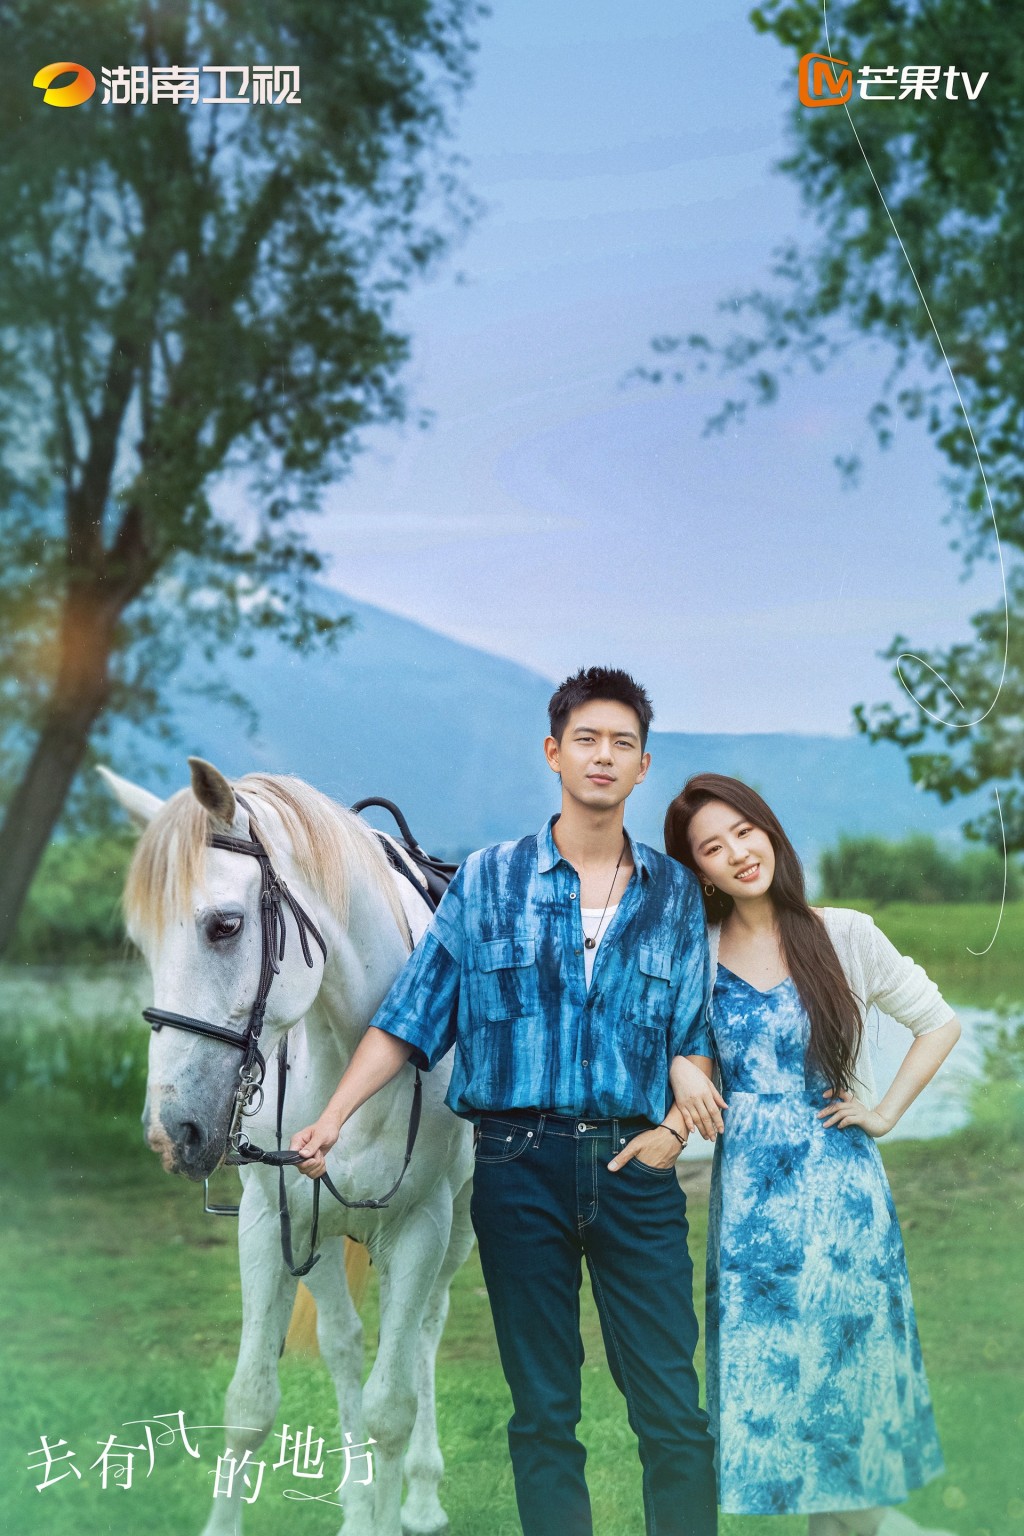 劉亦菲和李現主演的新劇《去有風的地方》現代偶像劇熱。微博圖